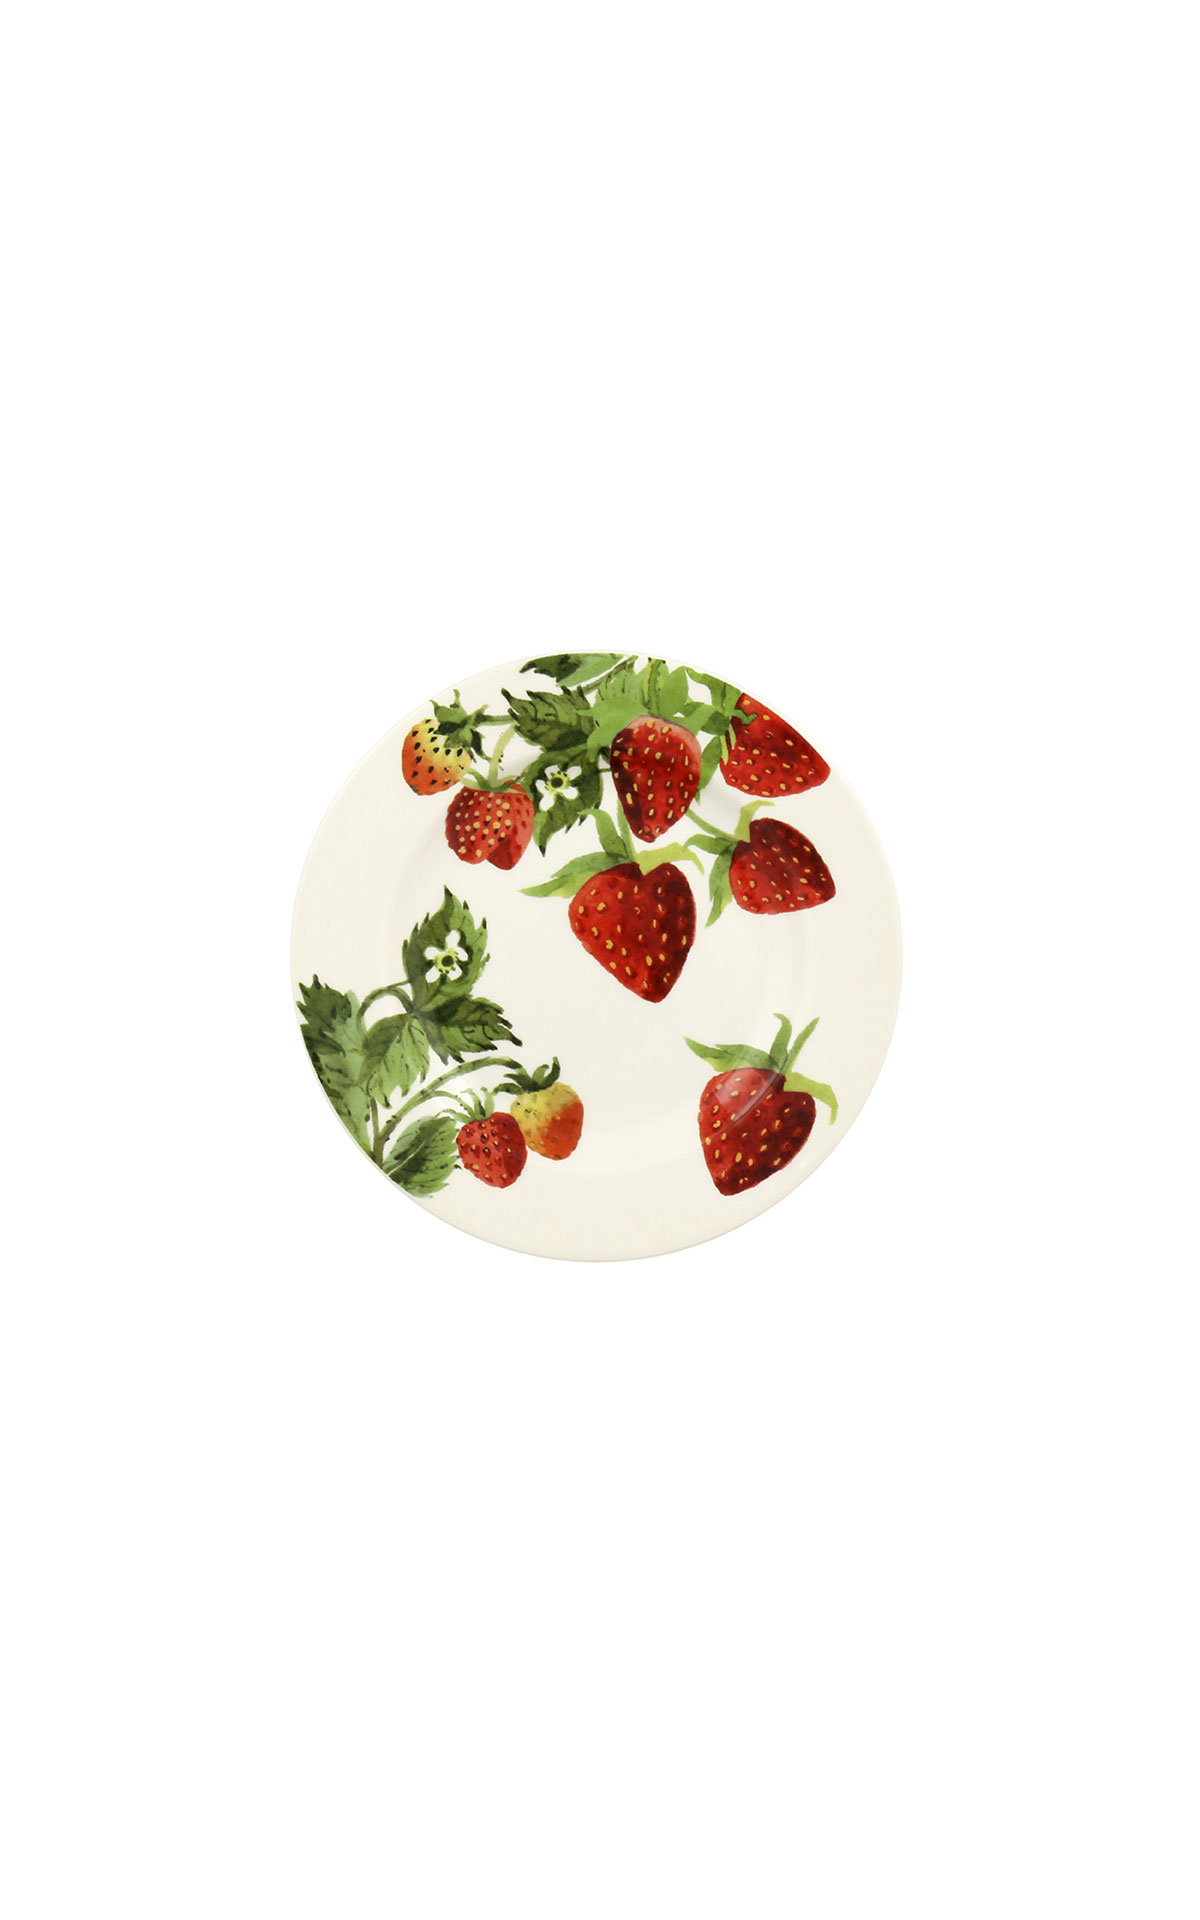 Emma Bridgewater Strawberries plate from Bicester Village